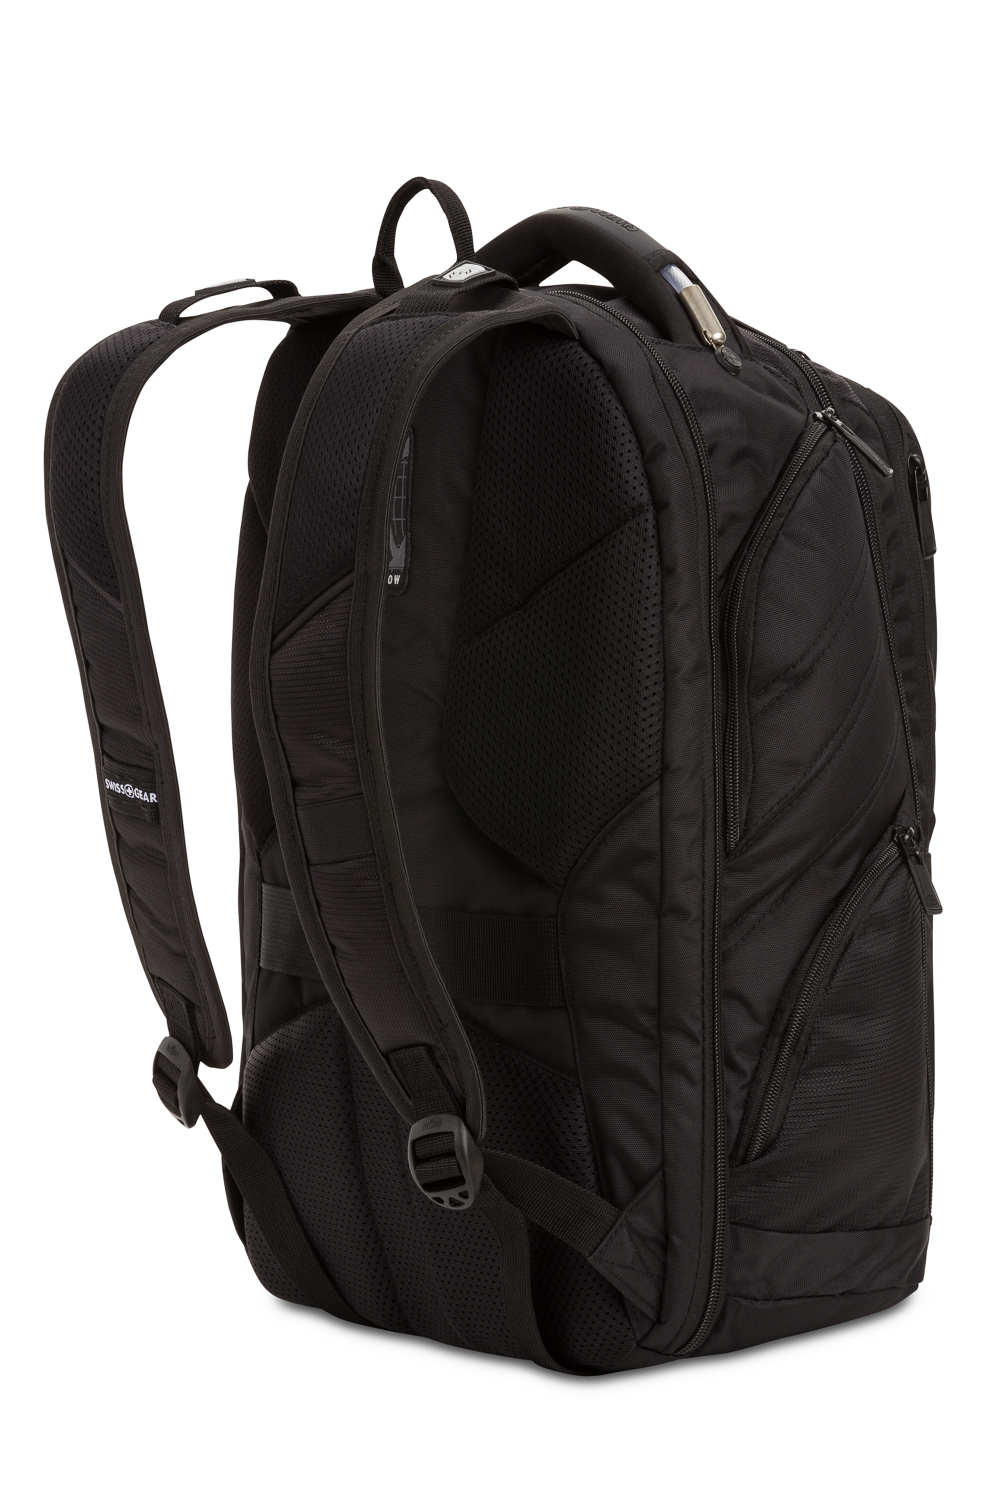 SWISSGEAR 2762 ScanSmart Laptop Backpack - Black